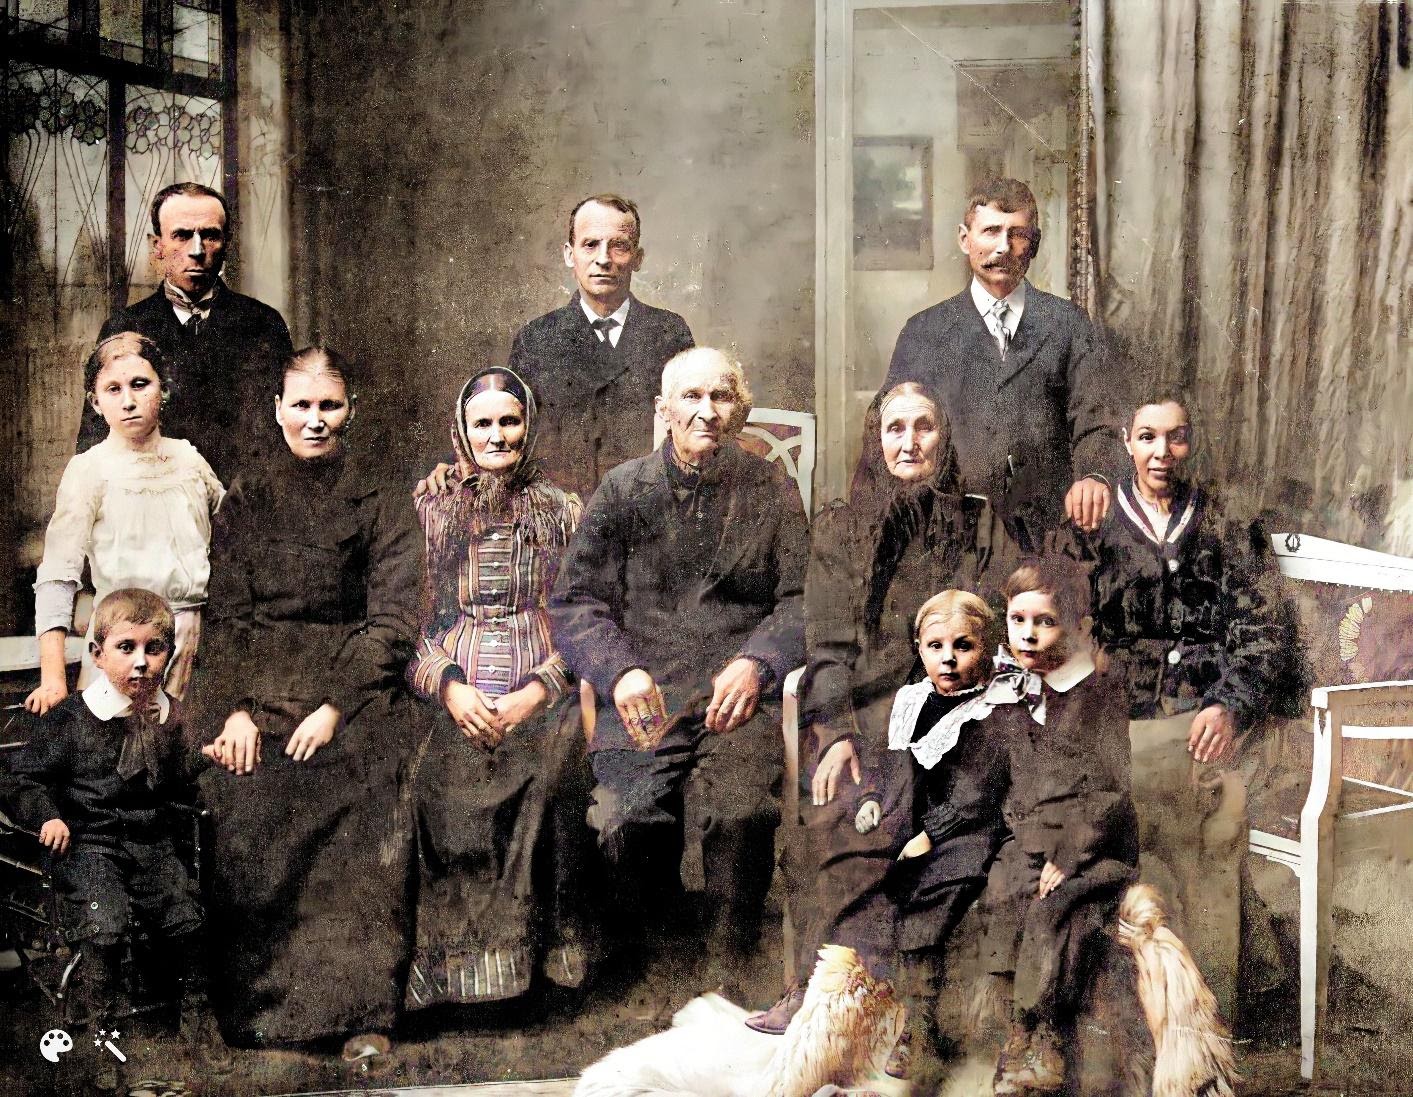 Het gezin van Josef Bayer III, mijn overgrootvader (achterste rij, uiterst rechts), rond 1912, met mijn overgrootmoeder, zijn tweede vrouw Anna Bayerová, geboren Vacovská, en zijn ouders (mijn betovergrootouders), Josef Bayer II. en Petronilla Bayerová.